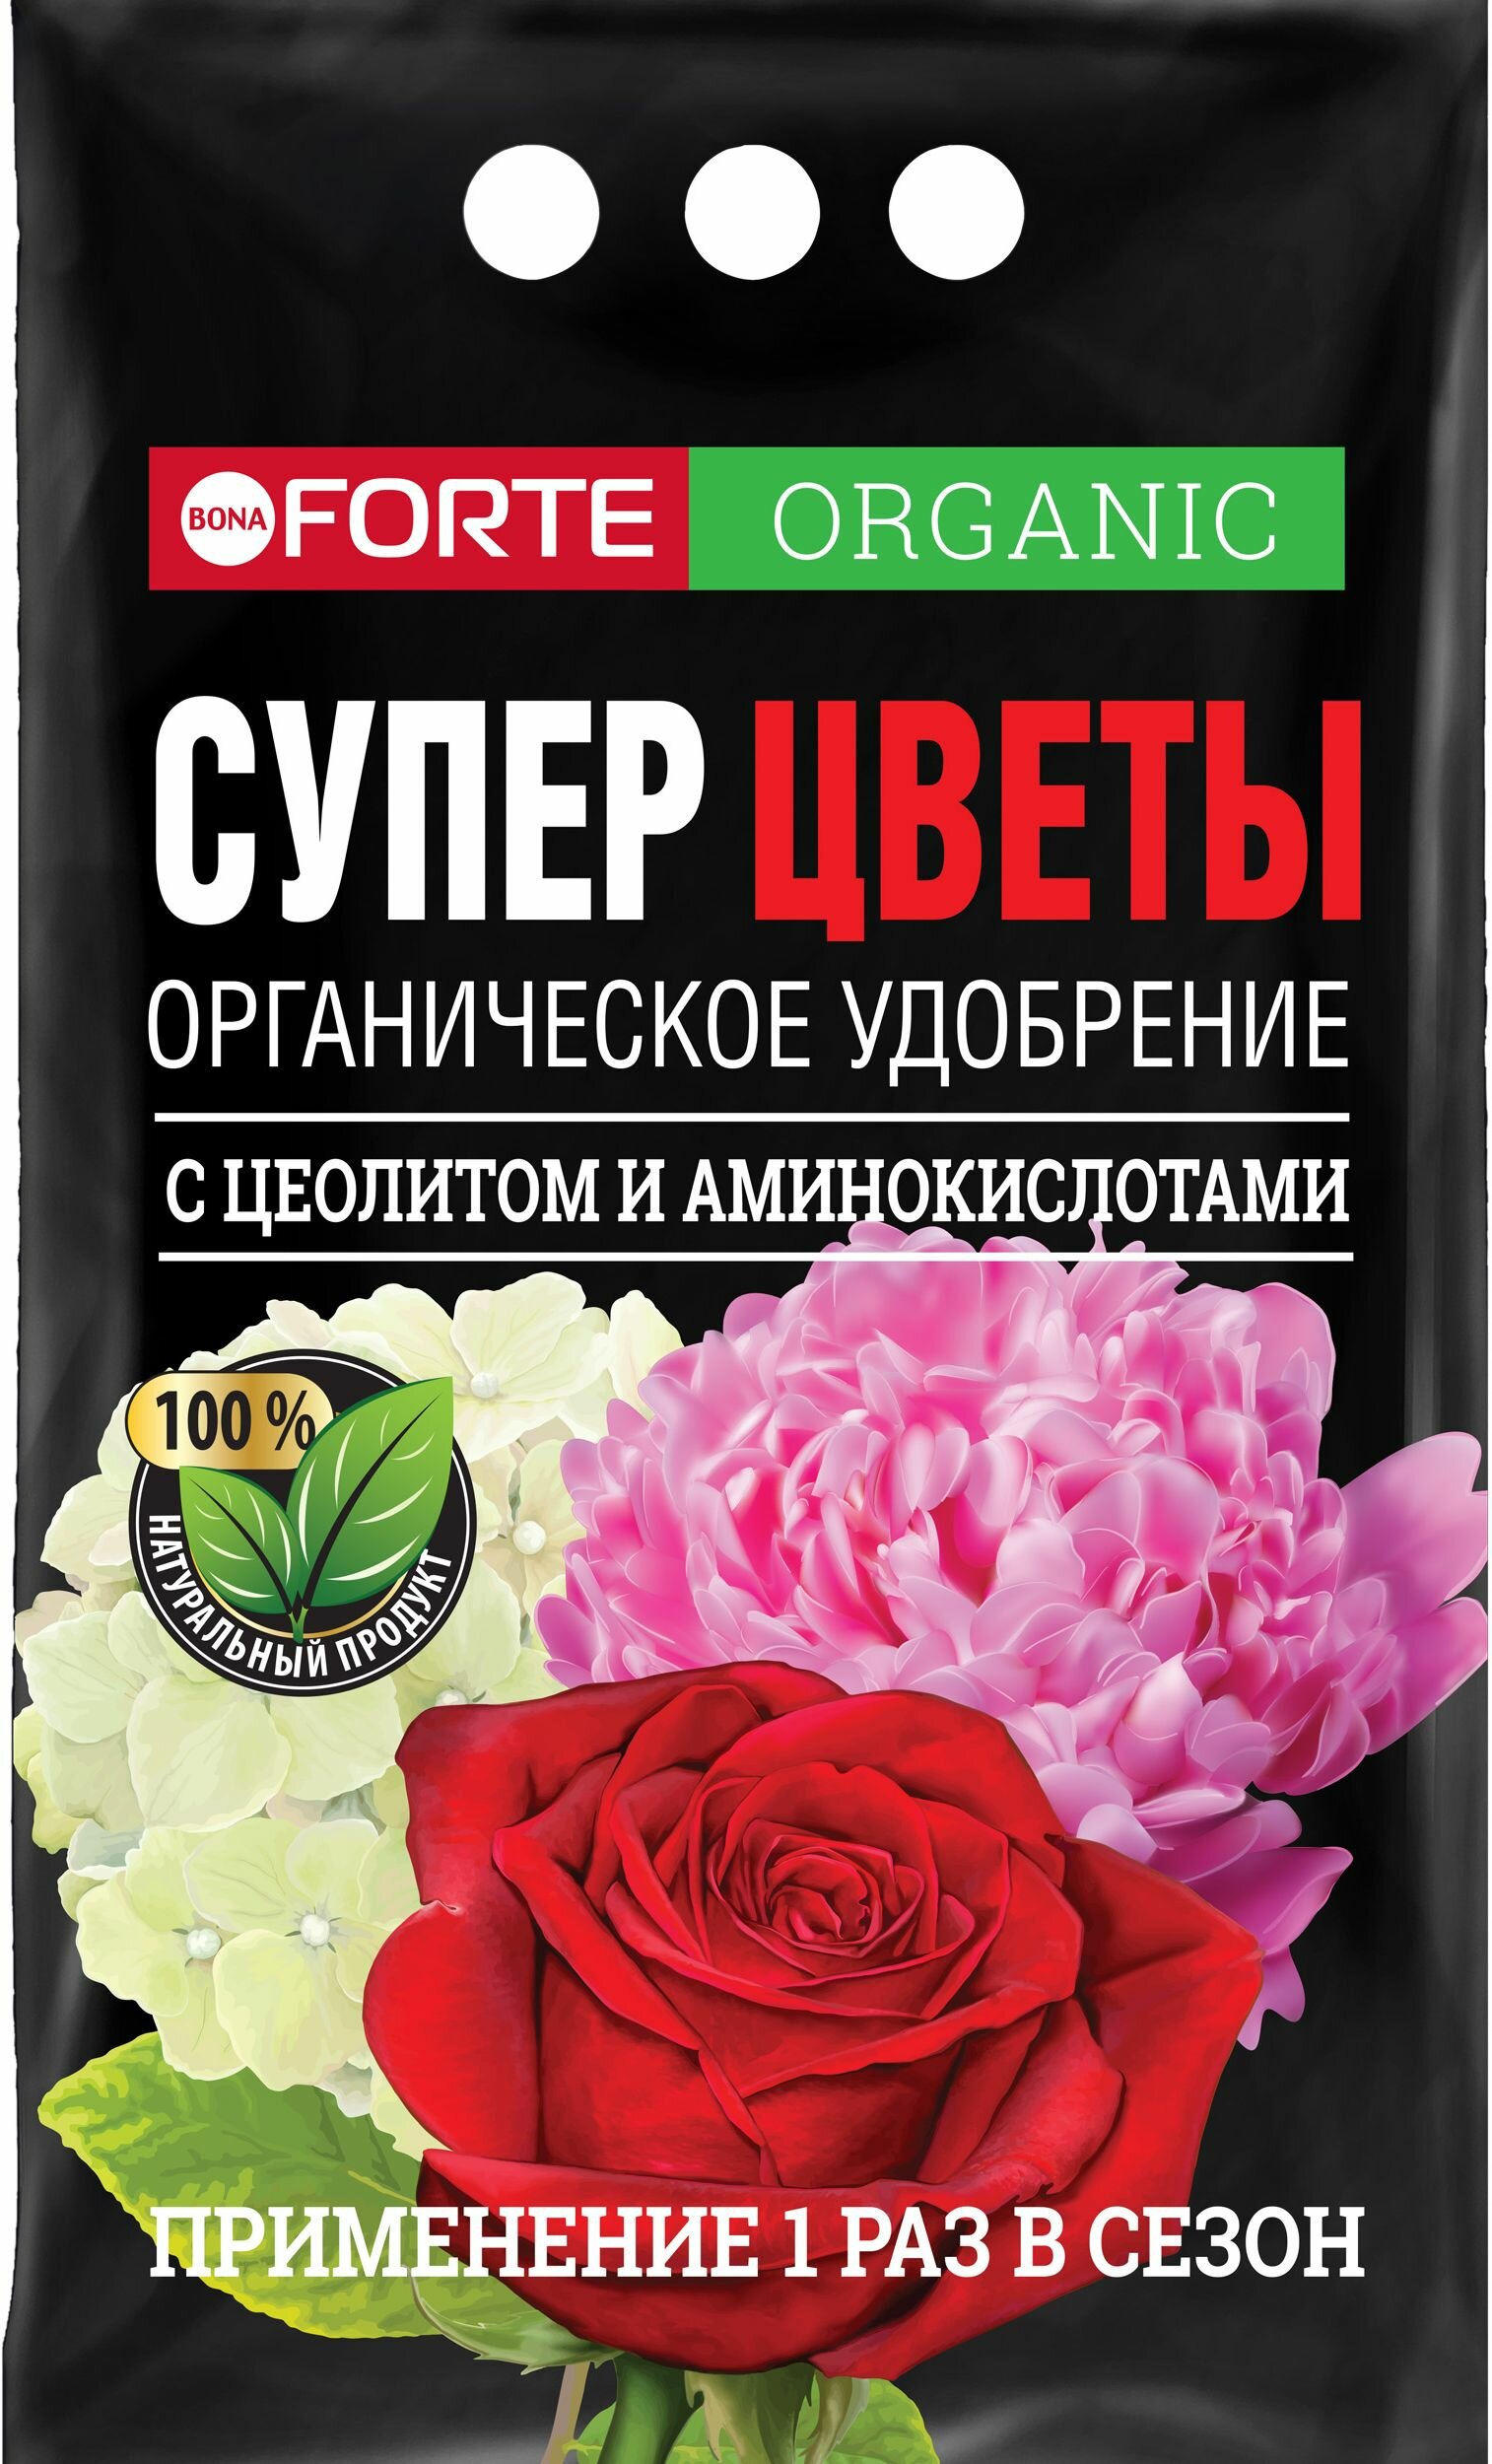 Органическое удобрение для цветов обогащенное цеолитом и аминокислотами Bona Forte 2 кг